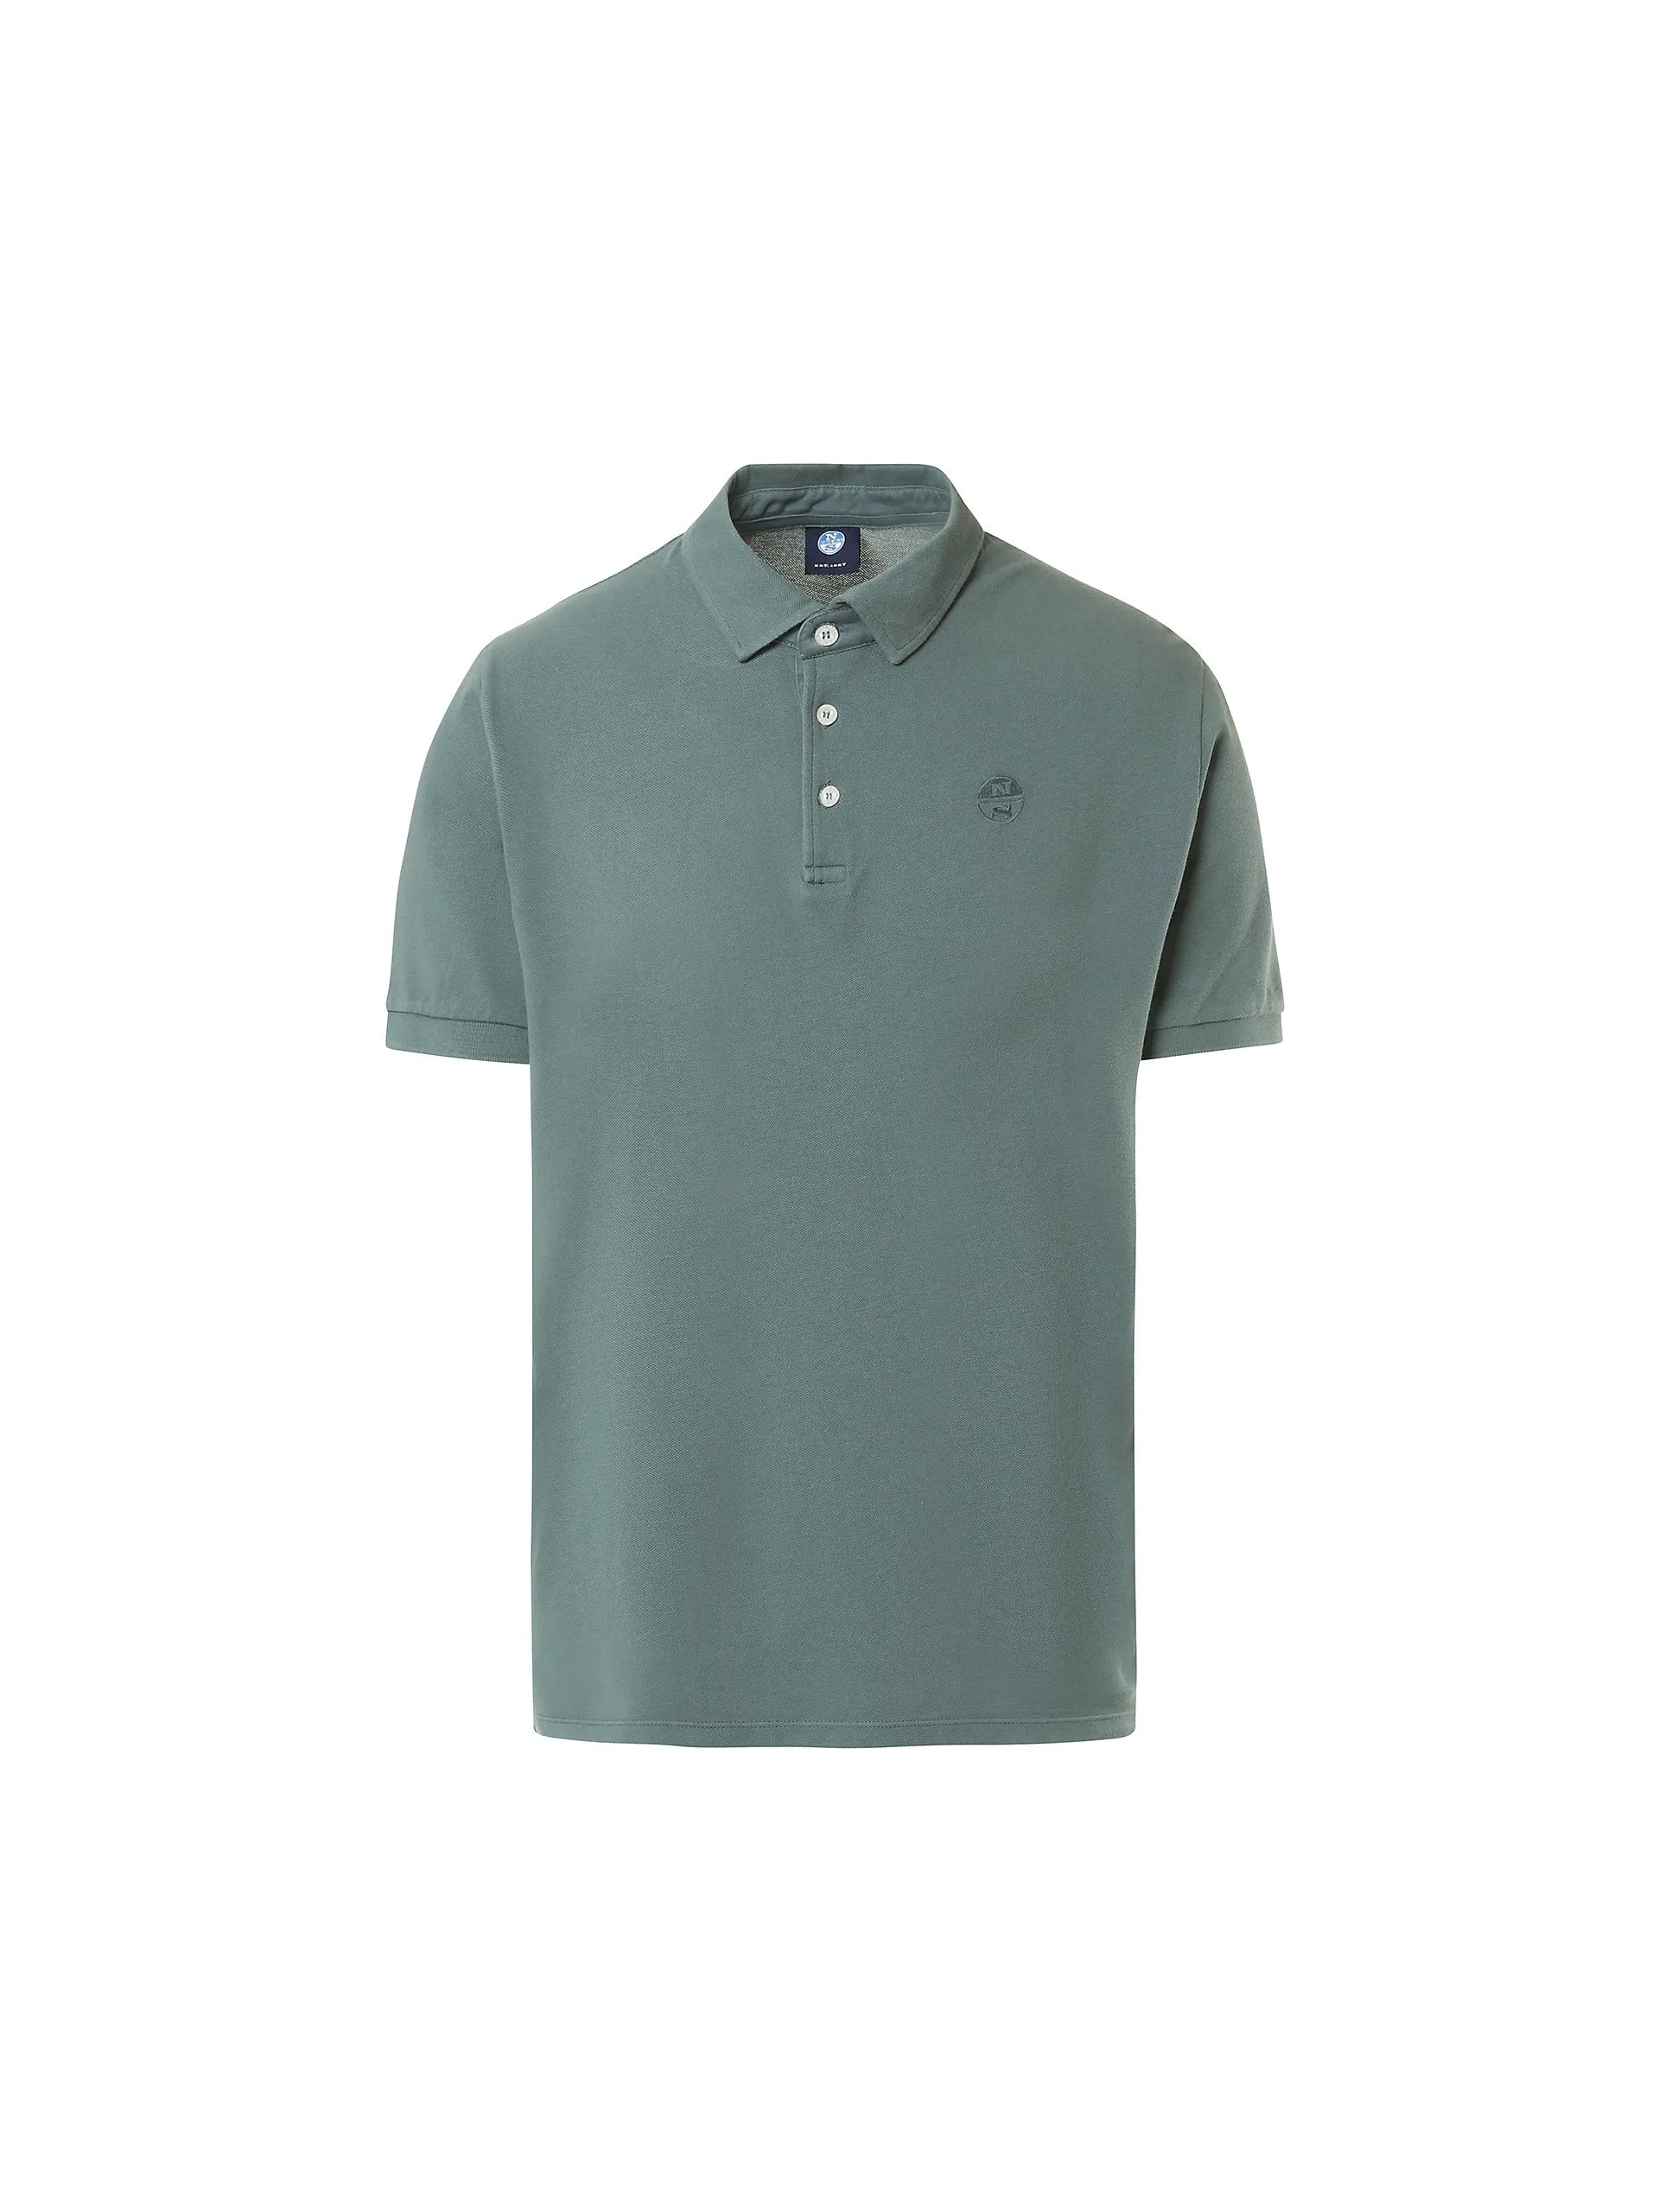  - Organic cotton polo shirtMilitary green4XL